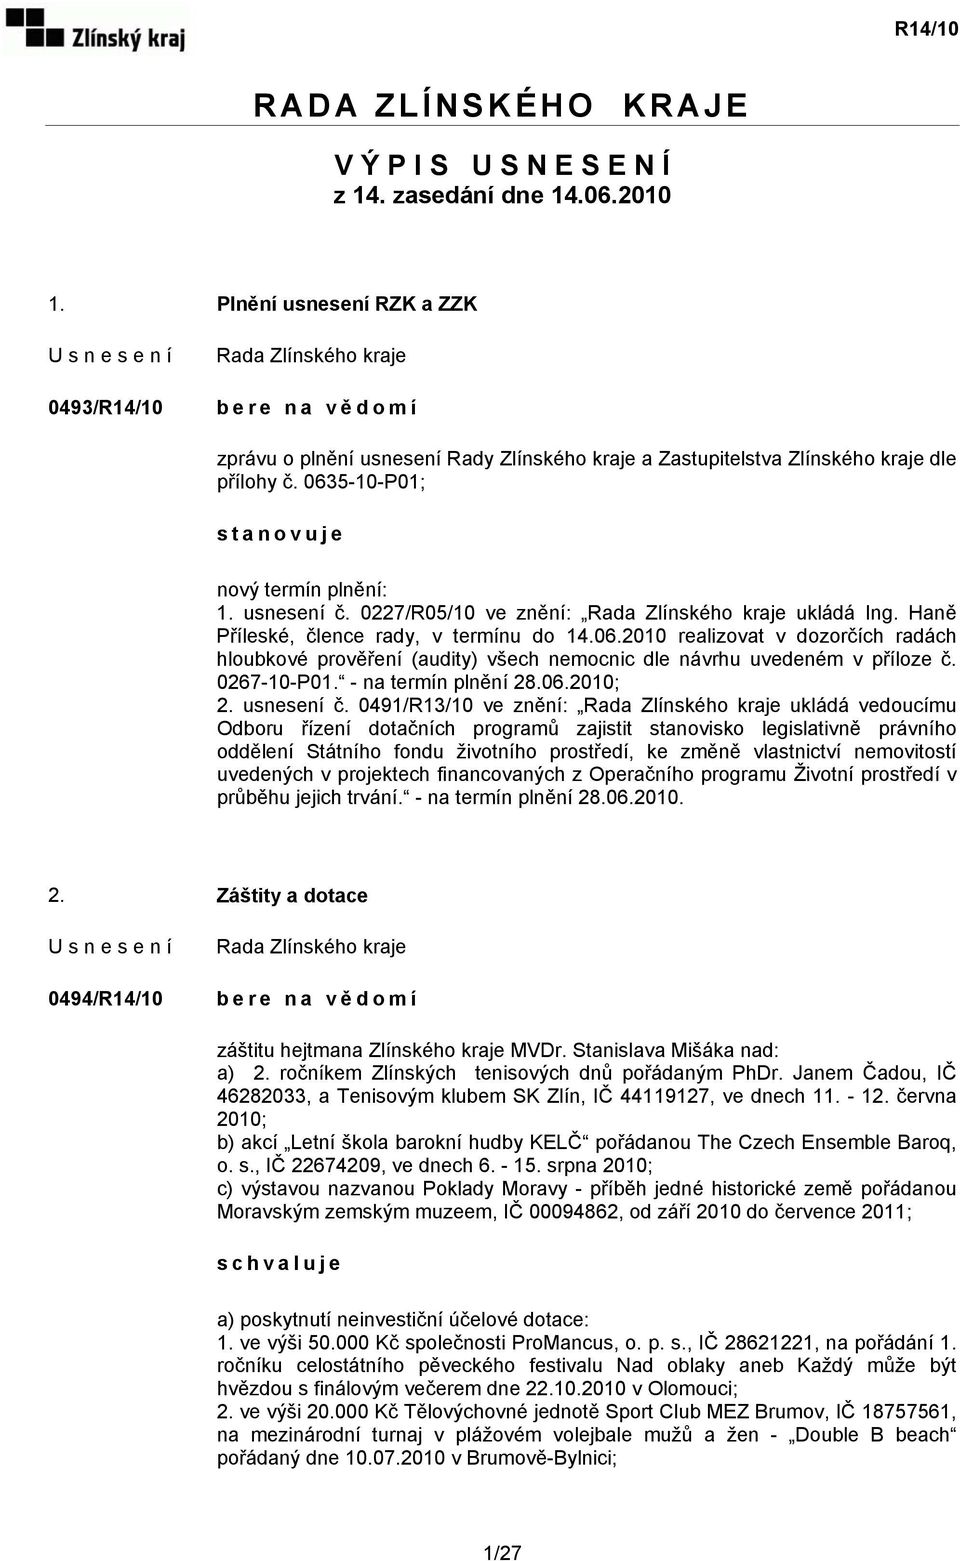 usnesení č. 0227/R05/10 ve znění: Ing. Haně Příleské, člence rady, v termínu do 14.06.2010 realizovat v dozorčích radách hloubkové prověření (audity) všech nemocnic dle návrhu uvedeném v příloze č.